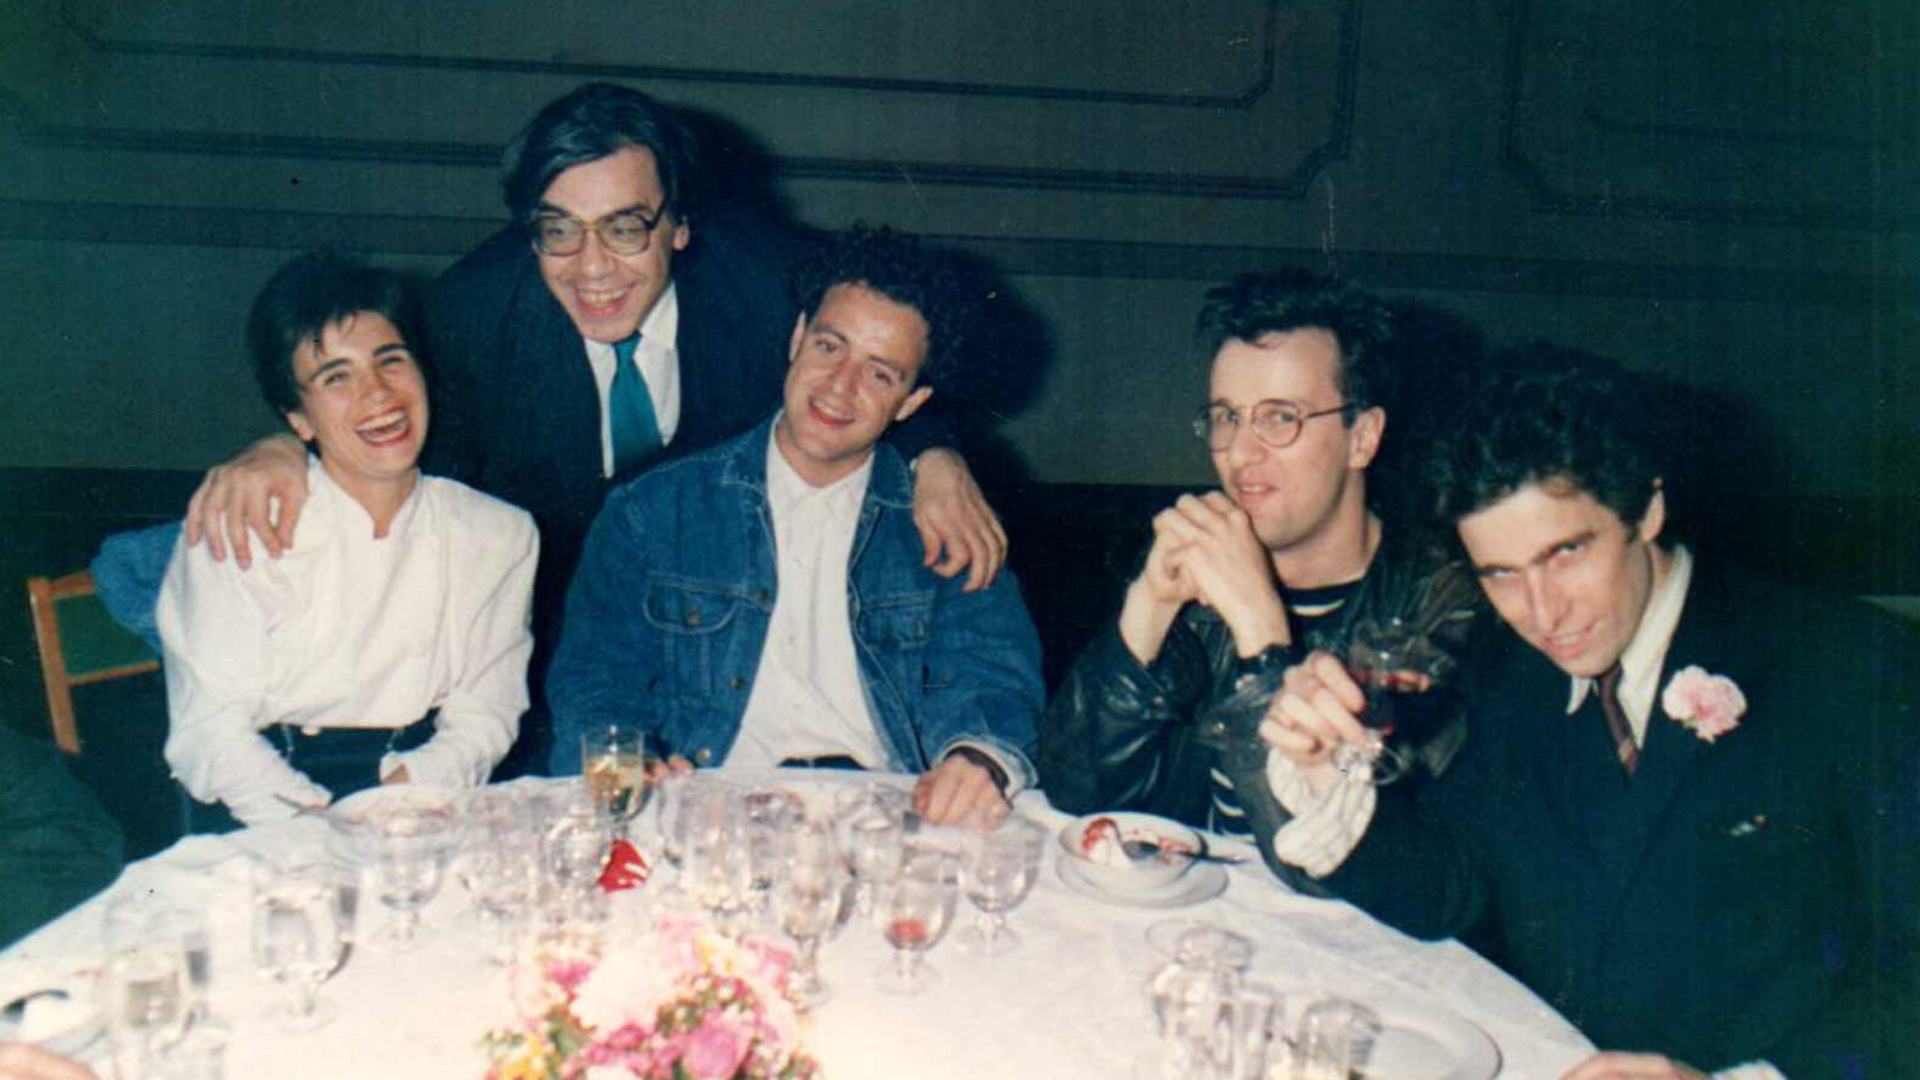 En los 70 Pinti asomó con sus espectáculos. Se consolidó en los 90 en esta imagen con Fresán, Juan Forn y Andrés Calamaro